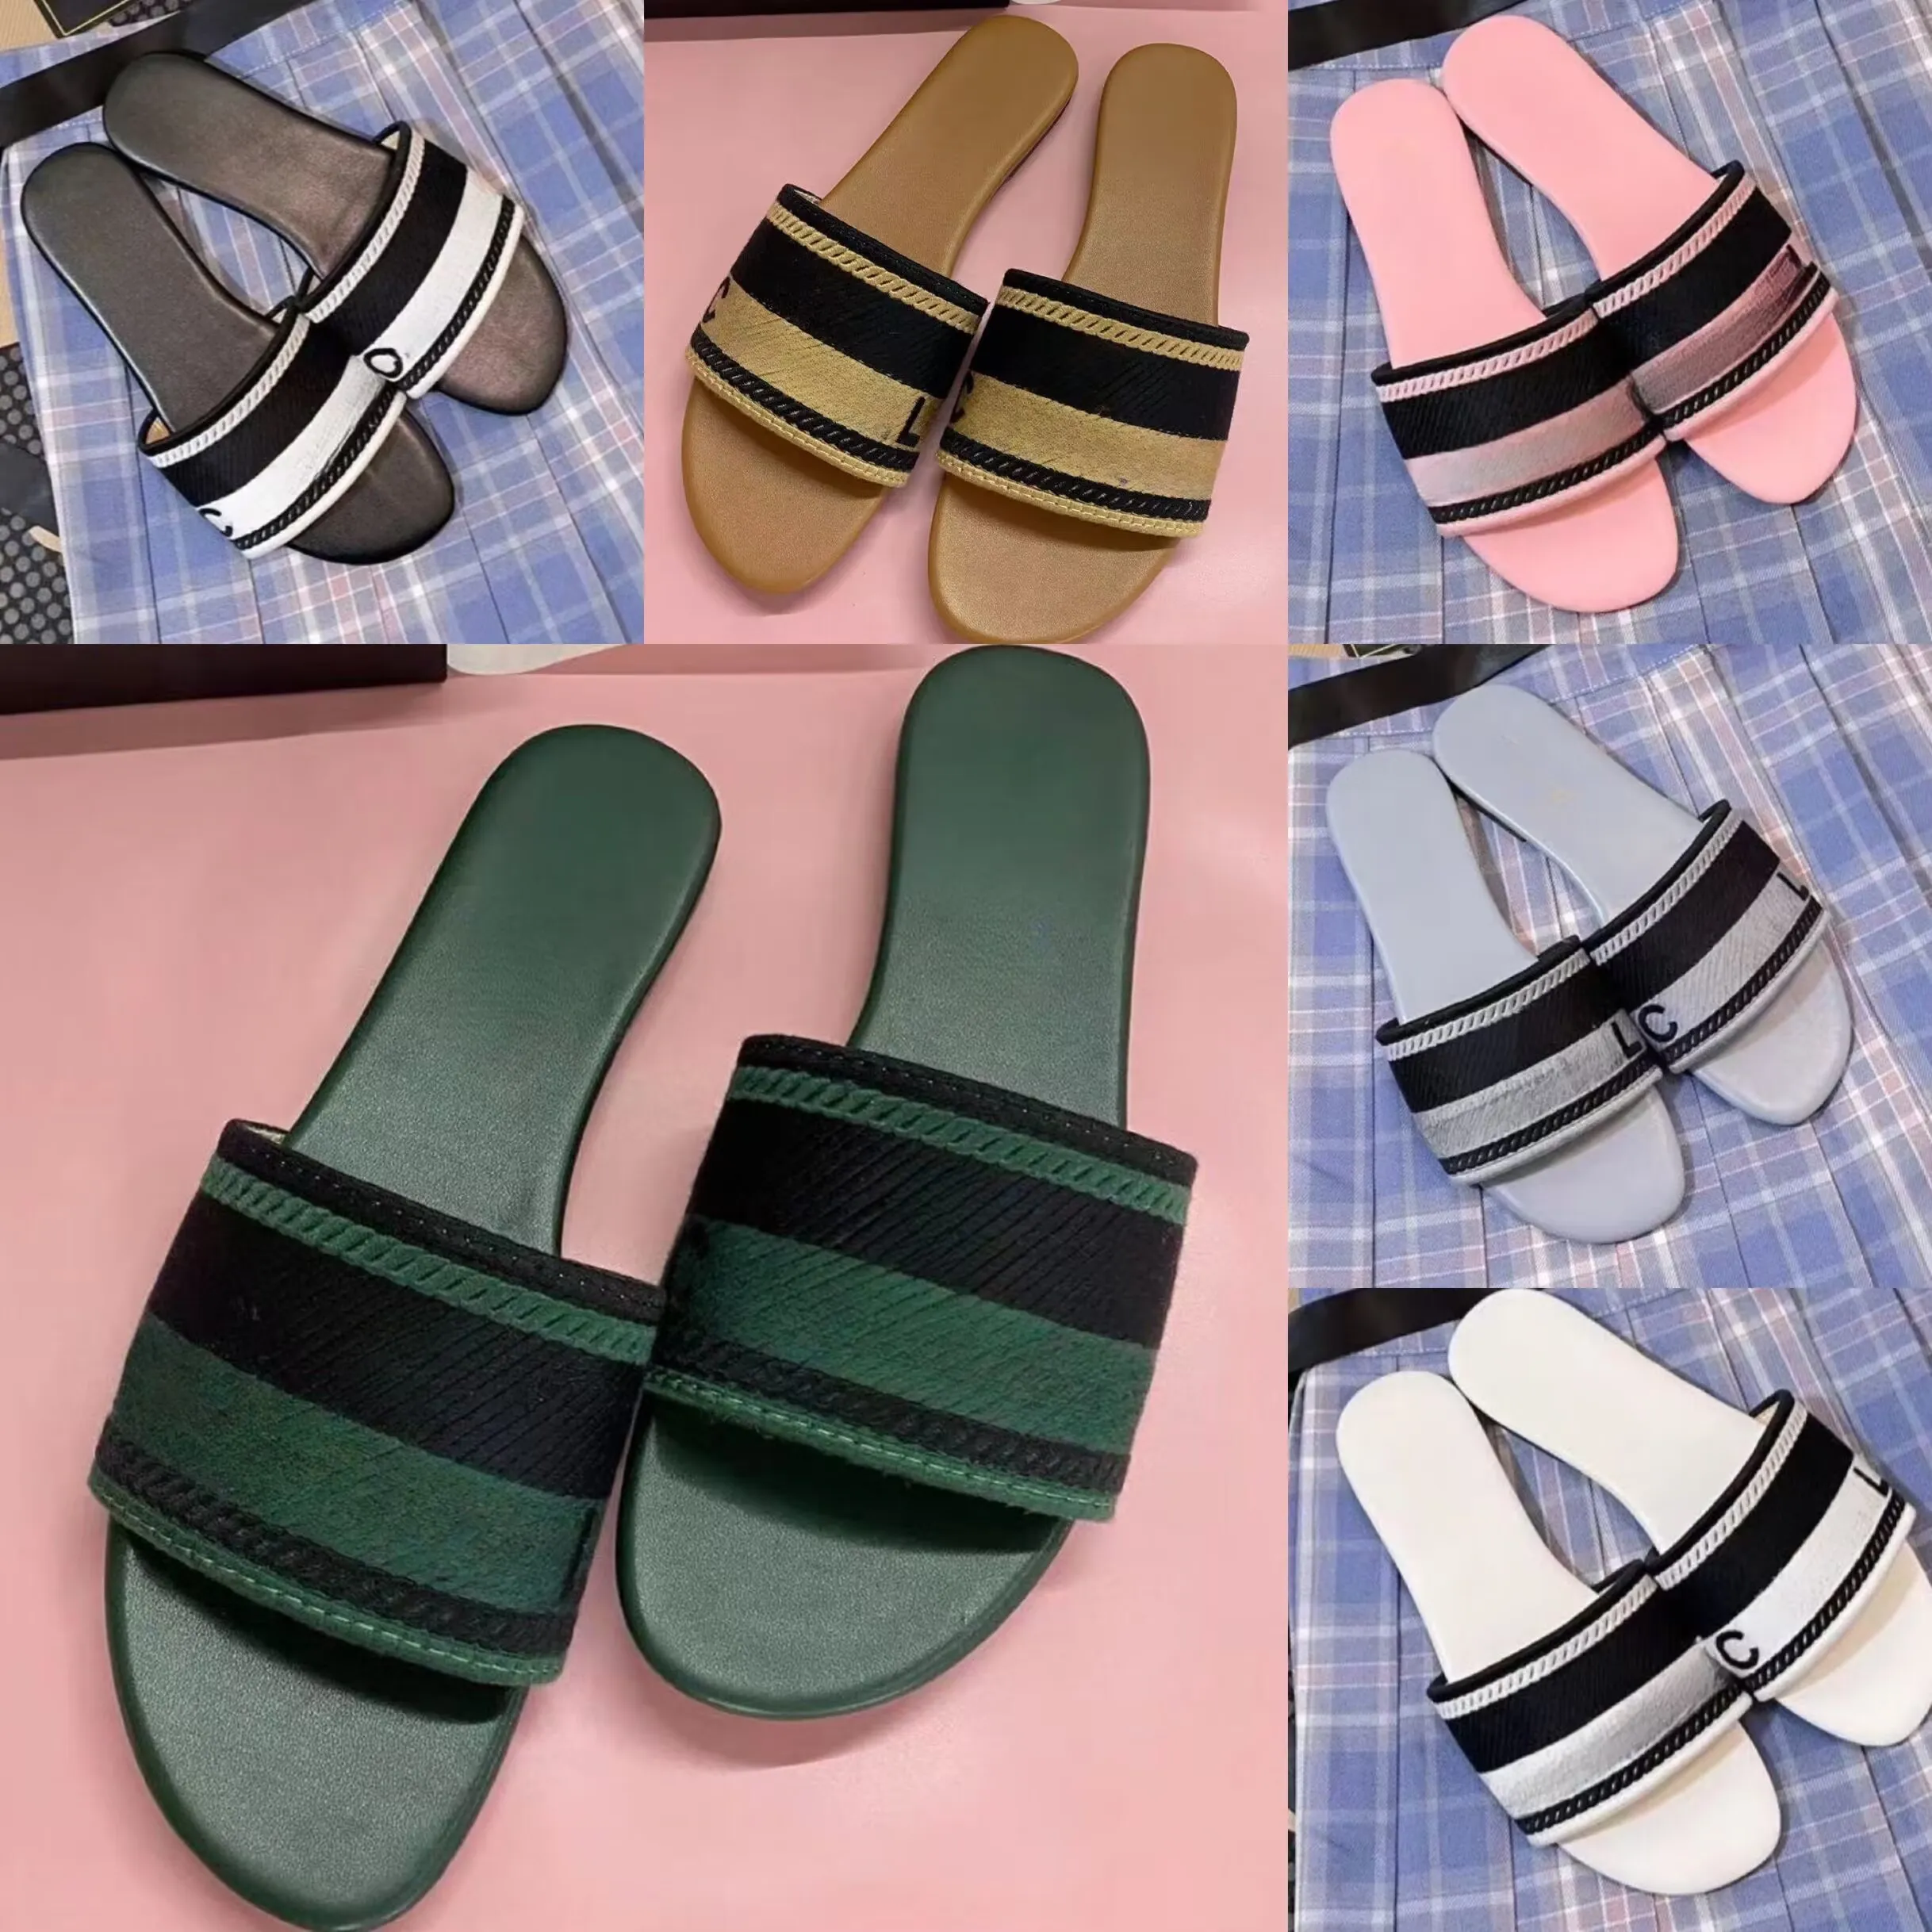 Designer de entrega grátis Sandálias de couro Bordadas de bordados de chinelos planos a um pé de sandálias femininas do lado de fora do desgaste de praia chinelos de praia